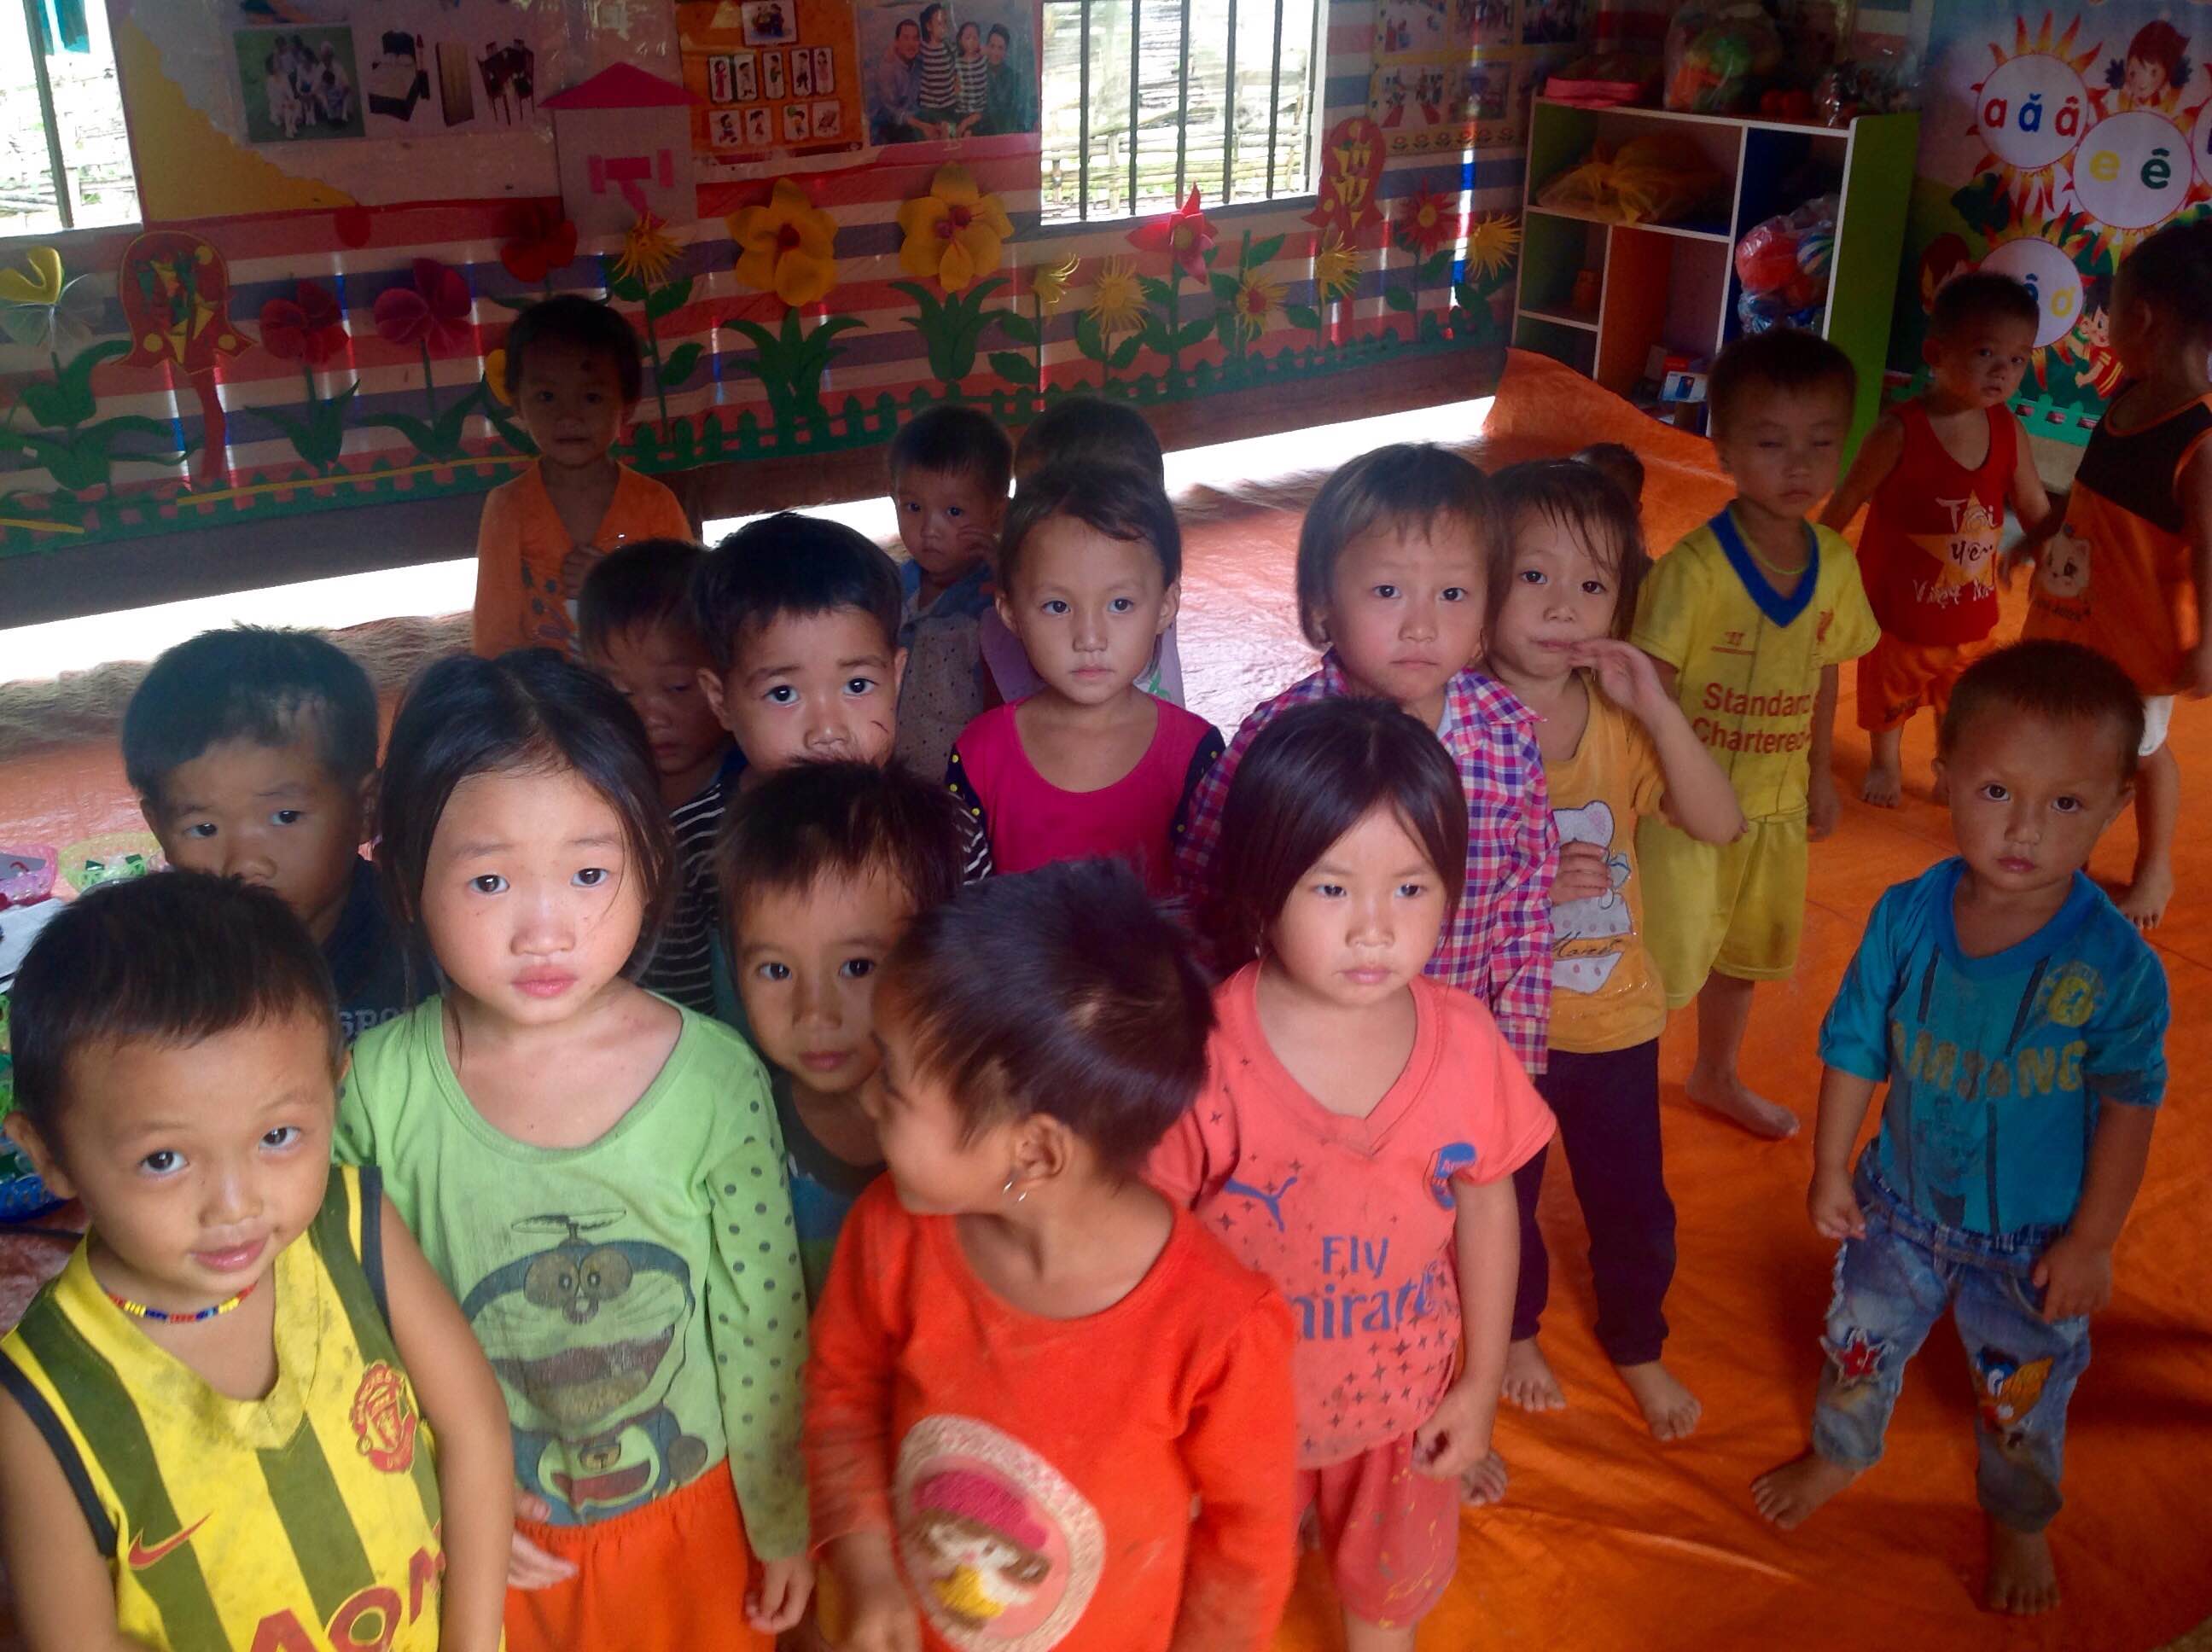 THƯ NGỎ
V/v: Tham dự và ủng hộ chương trình Hanoisme chung tay góp sức lần thứ 58
Tặng quà cho các thầy cô giáo và các em học sinh điểm trường Khuối én xã Thượng Bình, Huyện Bắc Quang, Tỉnh Hà Giang